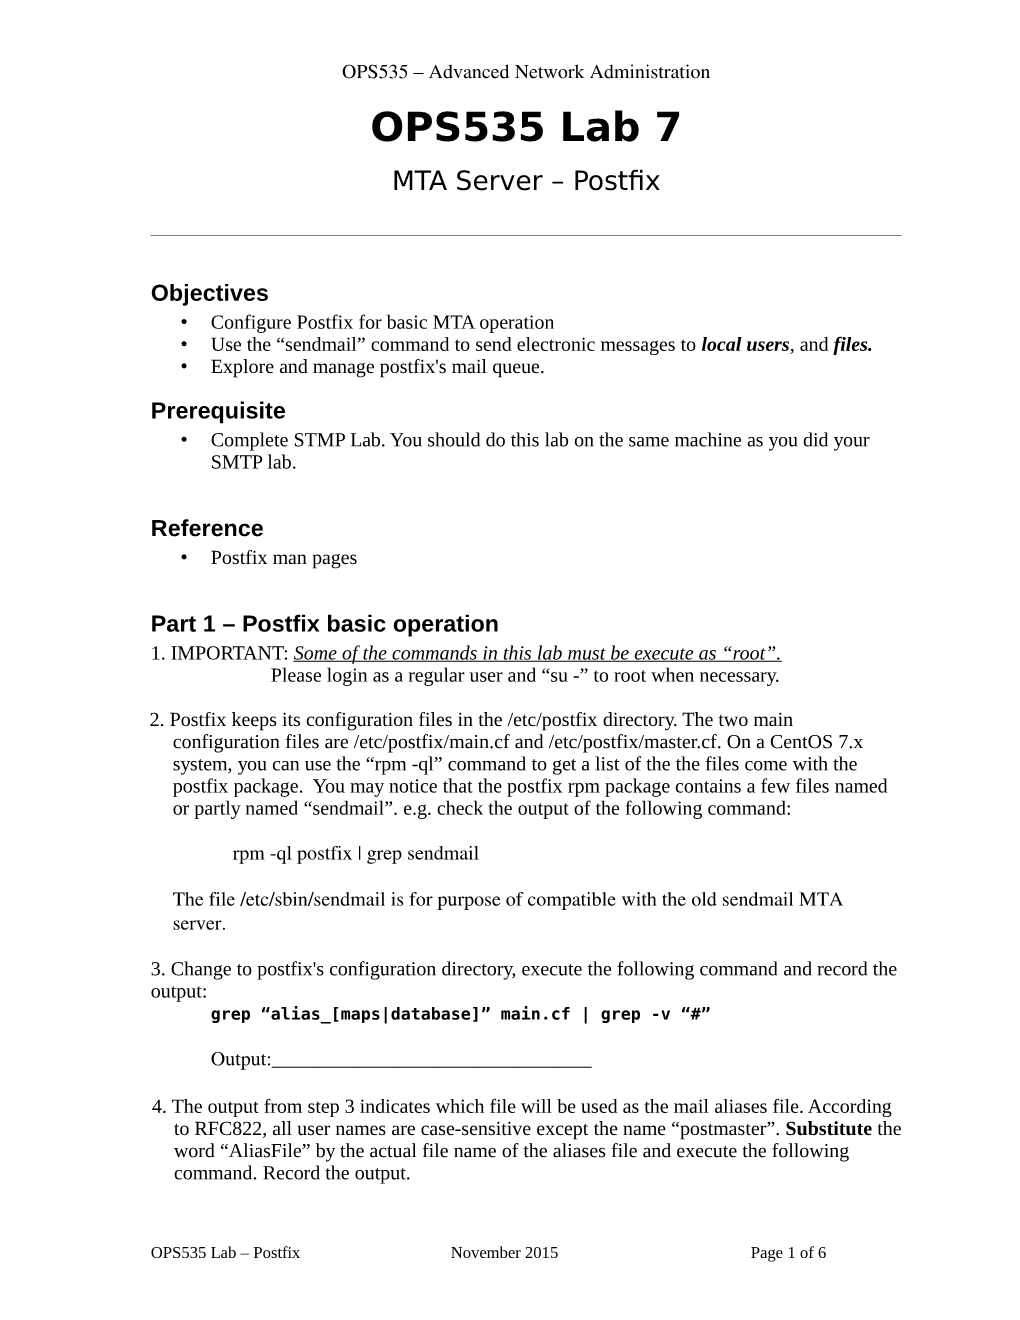 OPS535 Lab 7 MTA Server – Postfix